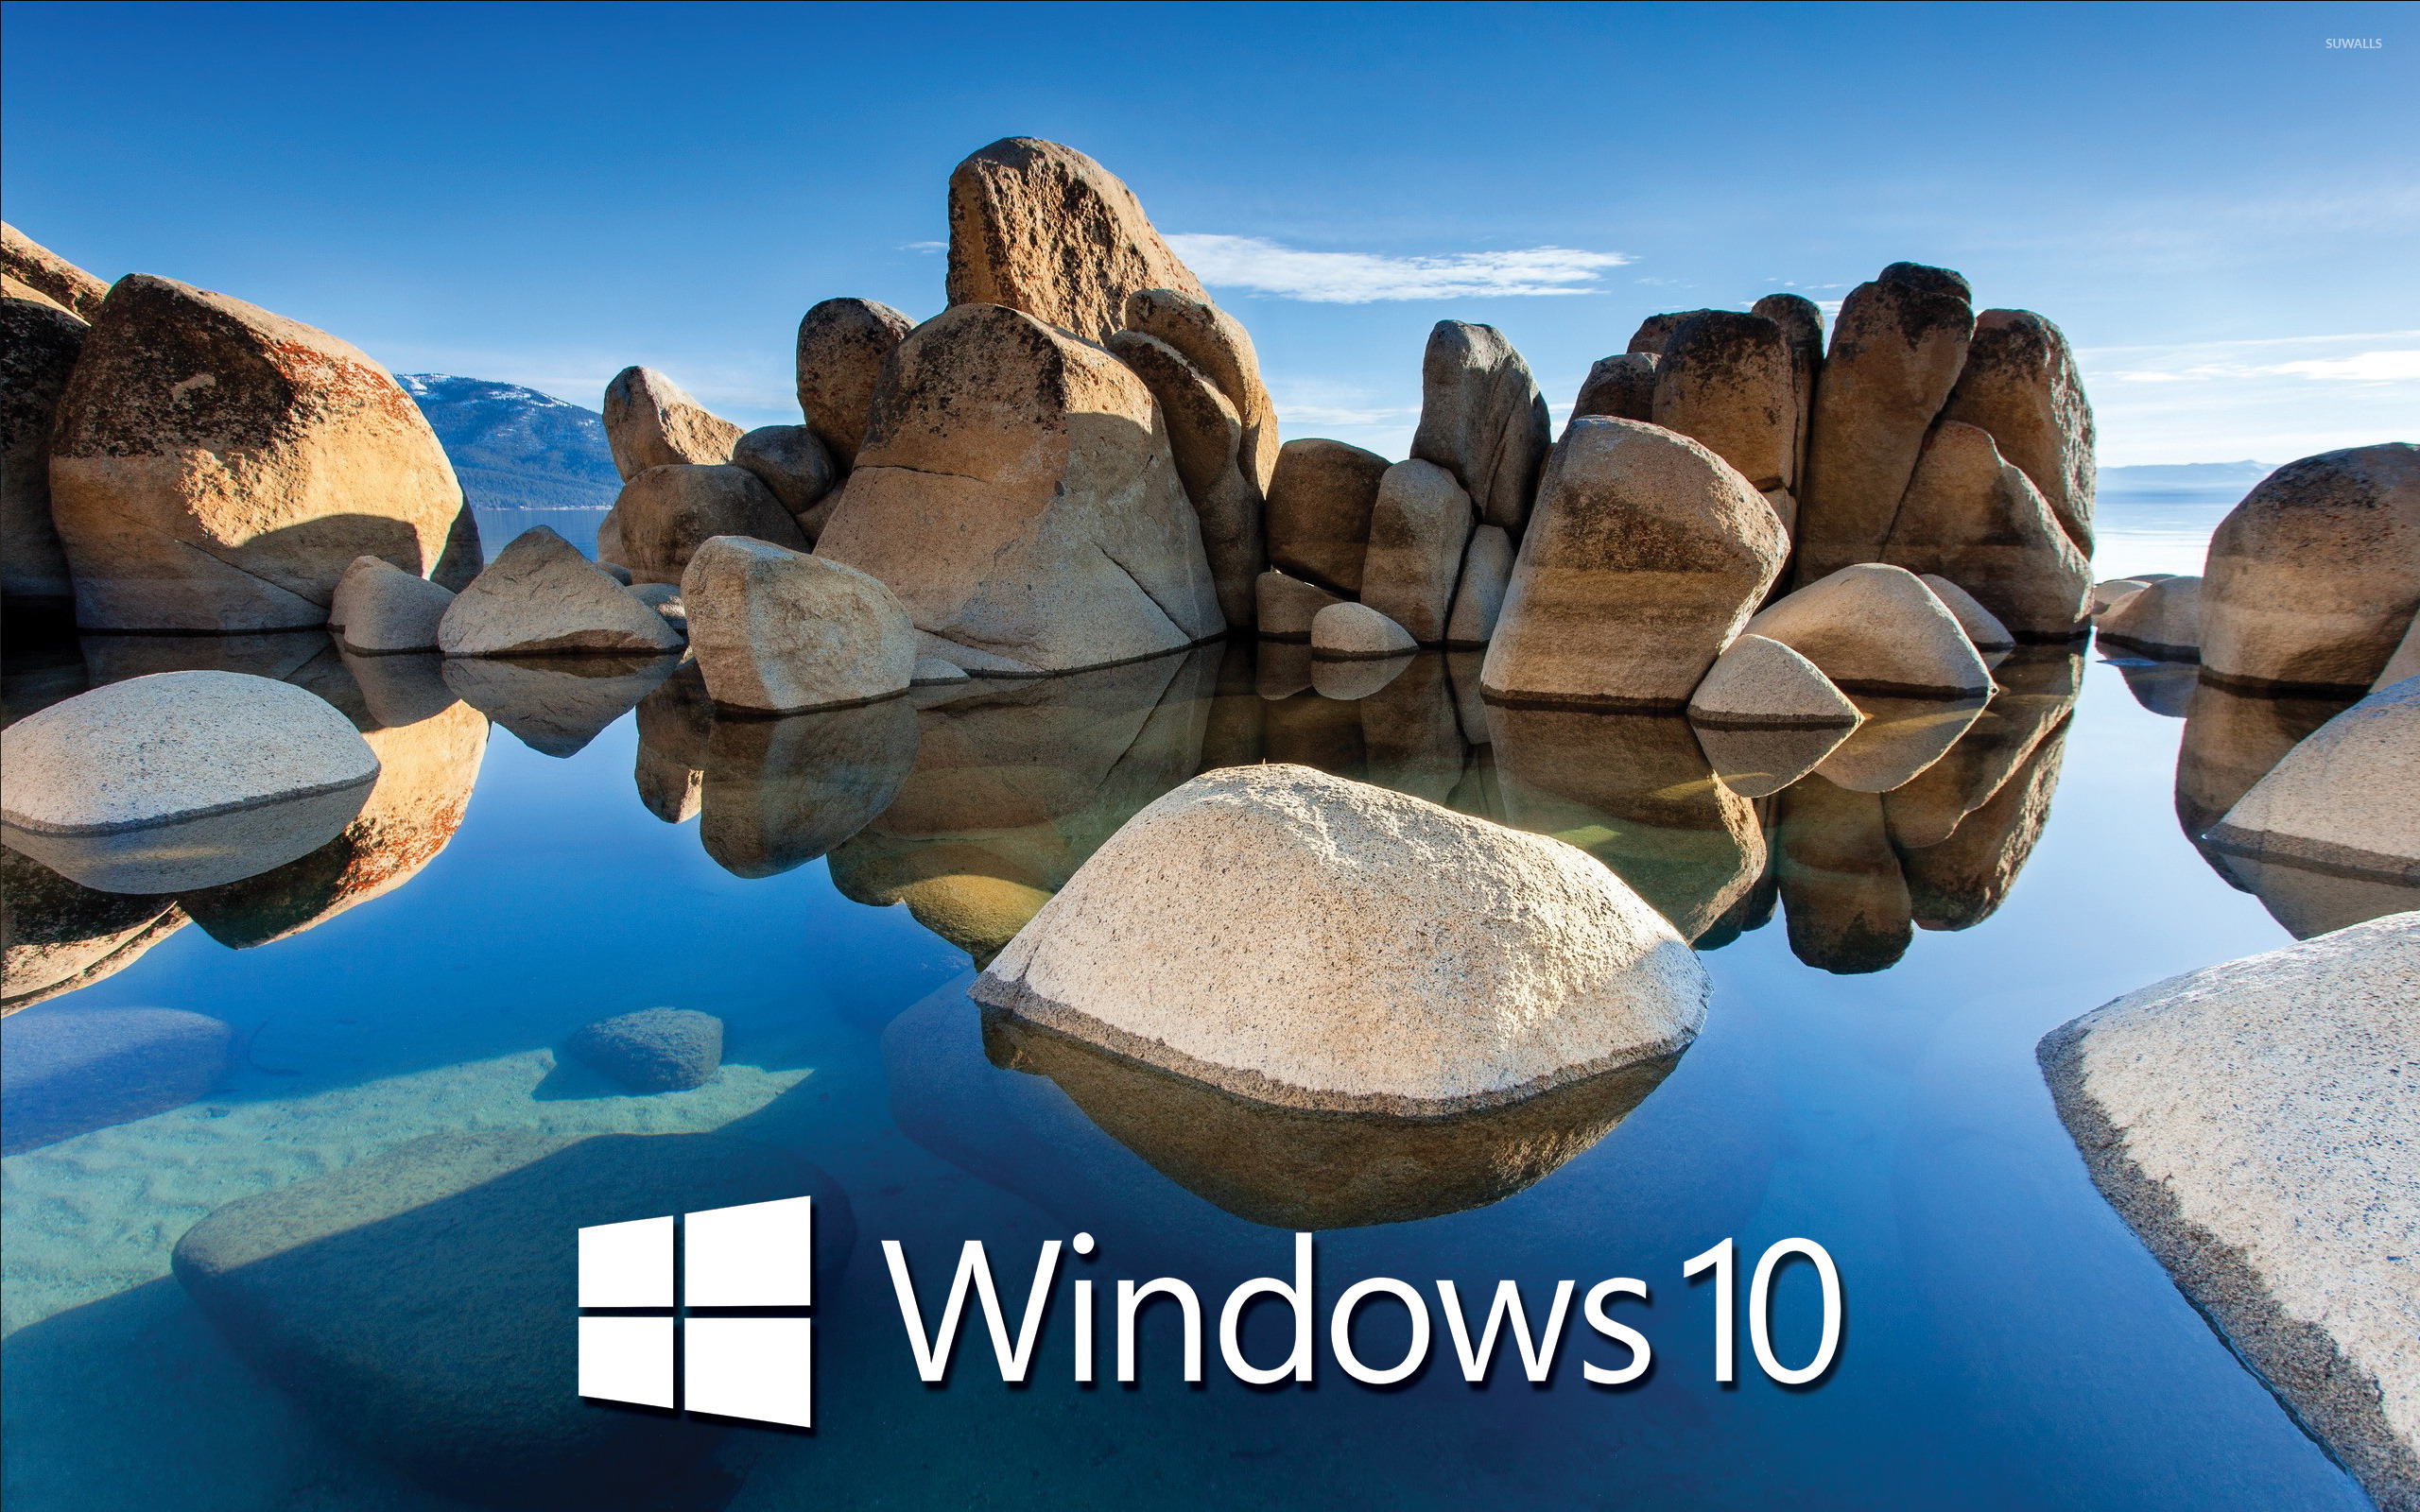 Hãy tải ngay Windows 10 logo trắng trên hồ đá để cảm nhận sự thanh lịch, tinh tế và độc đáo của nó. Hình ảnh sẽ mang đến cho bạn cảm giác thư giãn và phấn khích khi nhìn thấy bức ảnh độc đáo này.